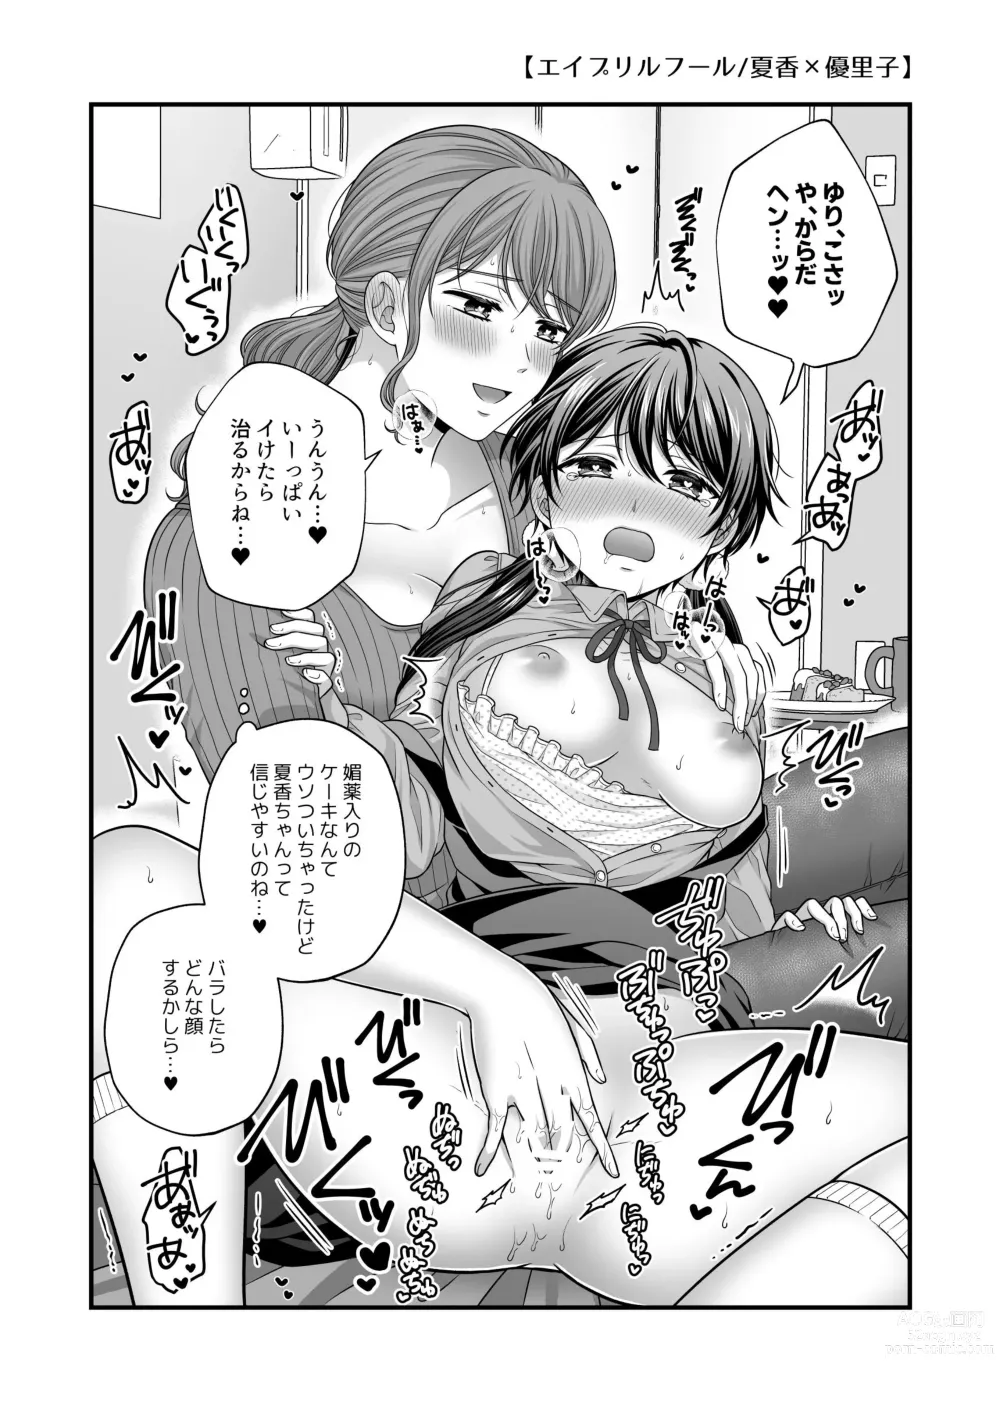 Page 8 of doujinshi Haru, Yuri, Ecchi.